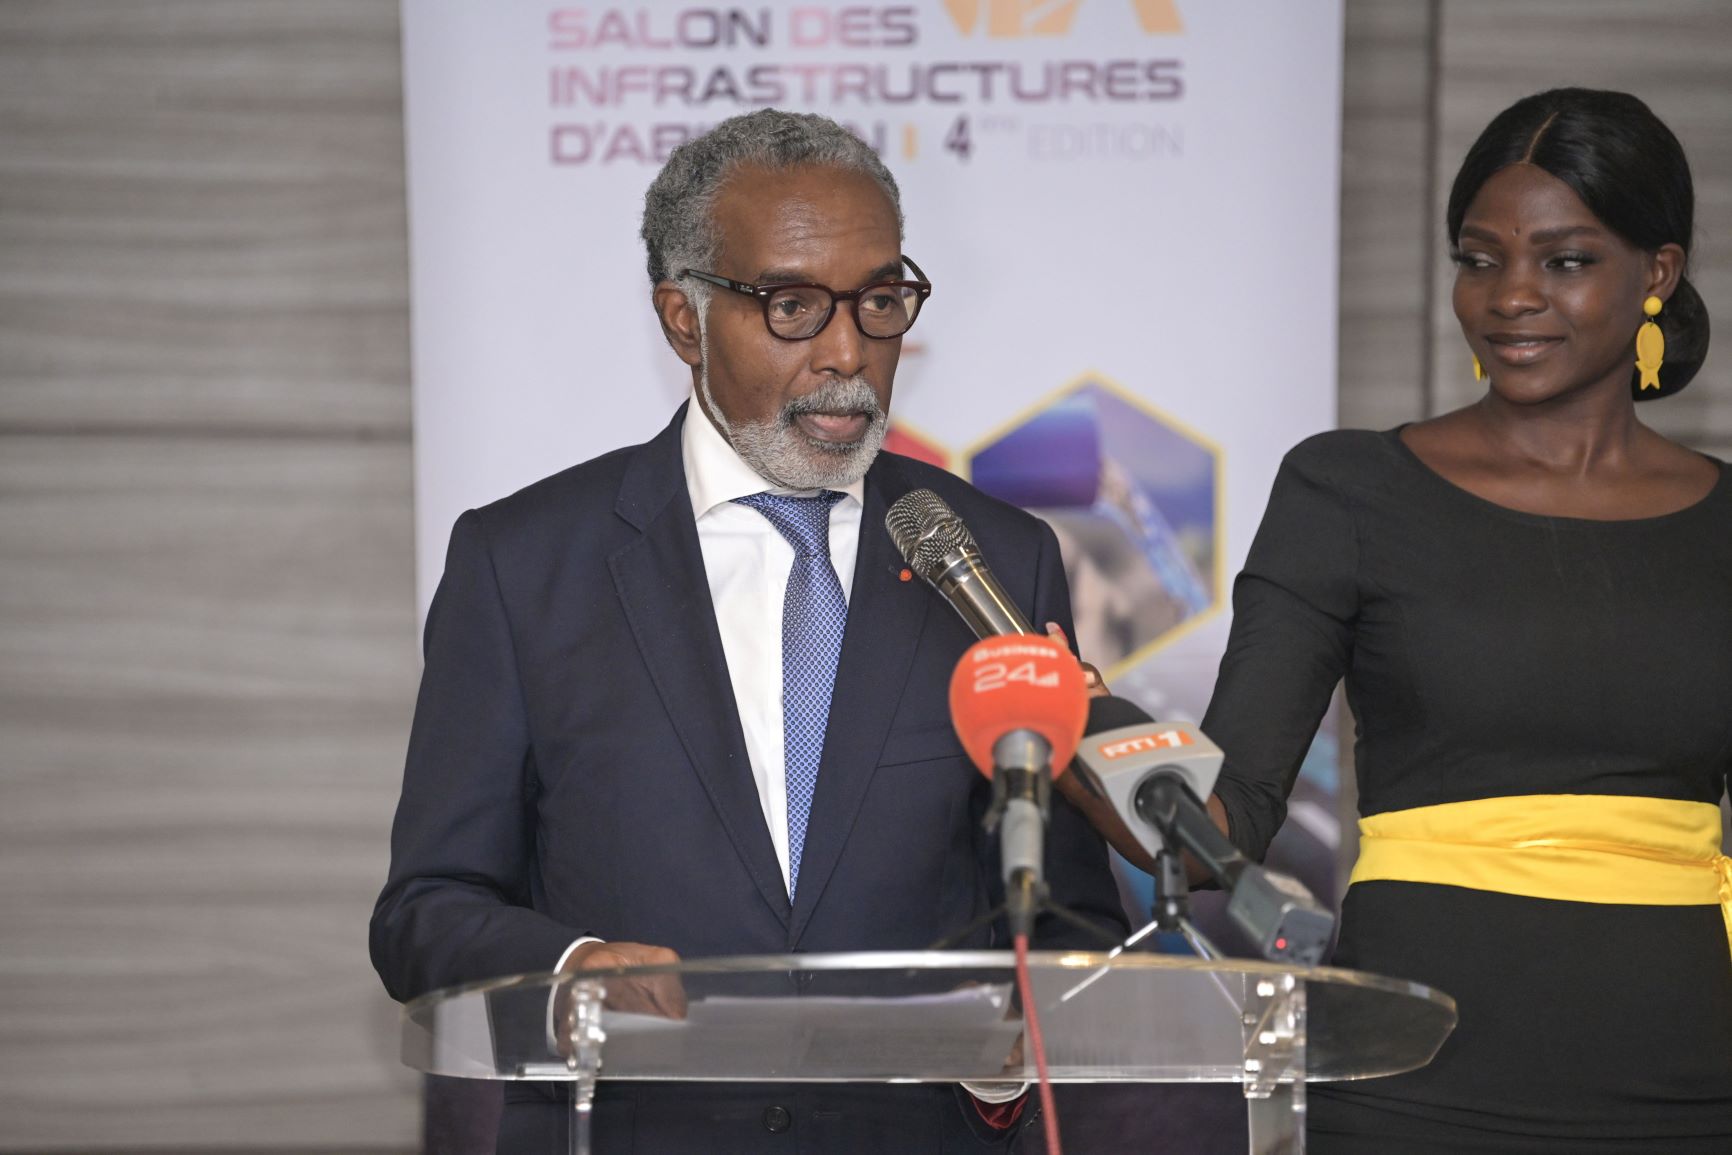 Le salon des infrastructures d'Abidjan est prévu pour les 12, 13 et 14 novembre autour du thème des Technologies émergentes et innovations